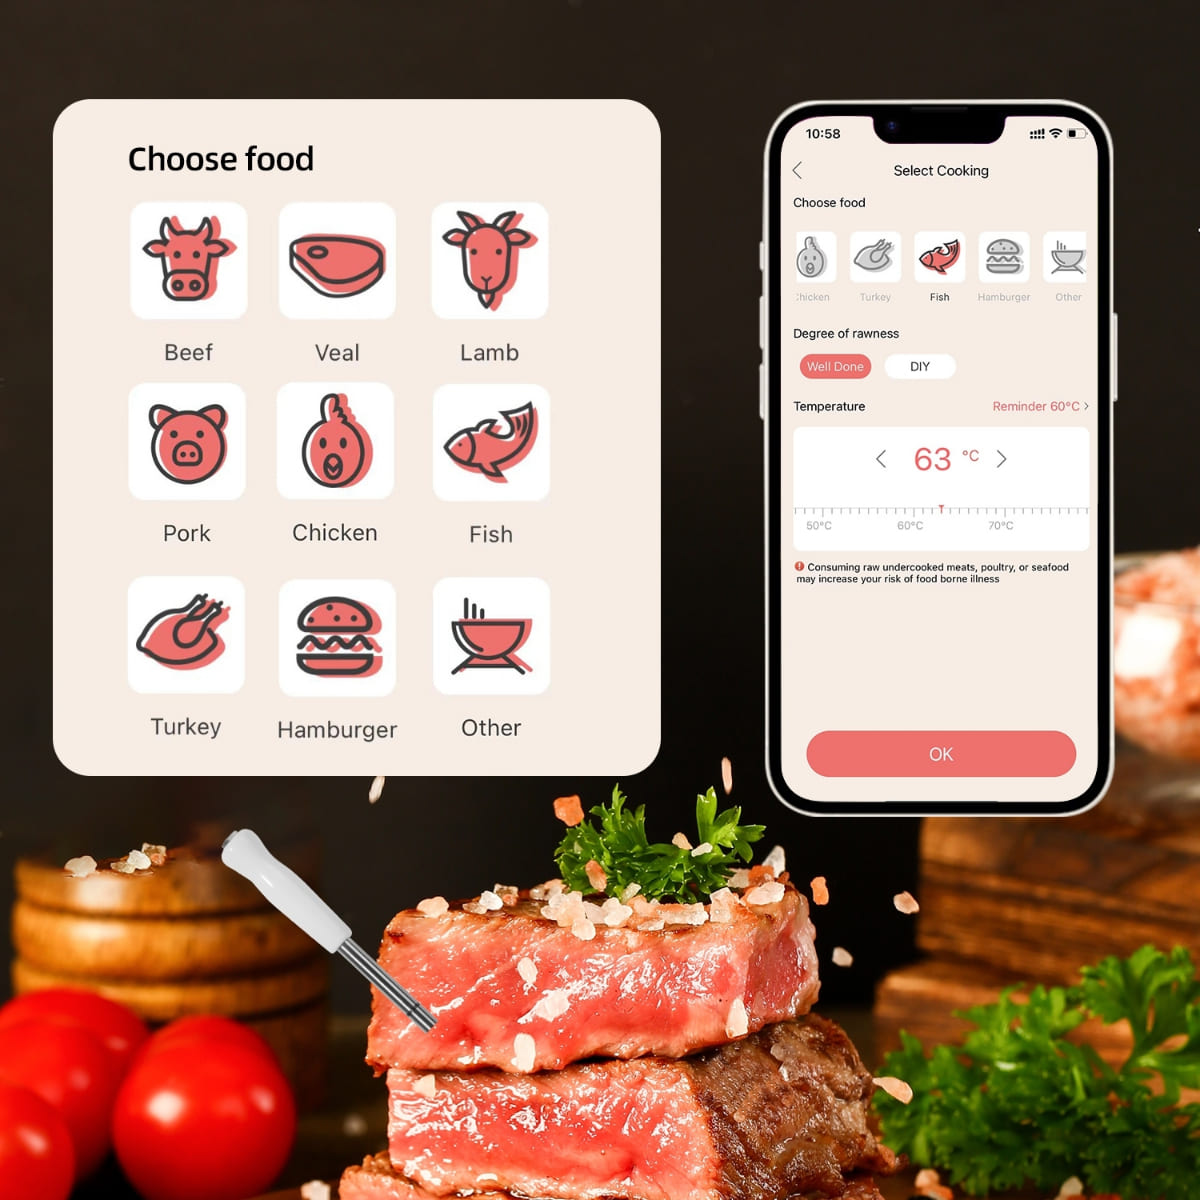 Termometer za pečenje mesa na žaru - bluetooth podpora do 100m (mobilna aplikacija)